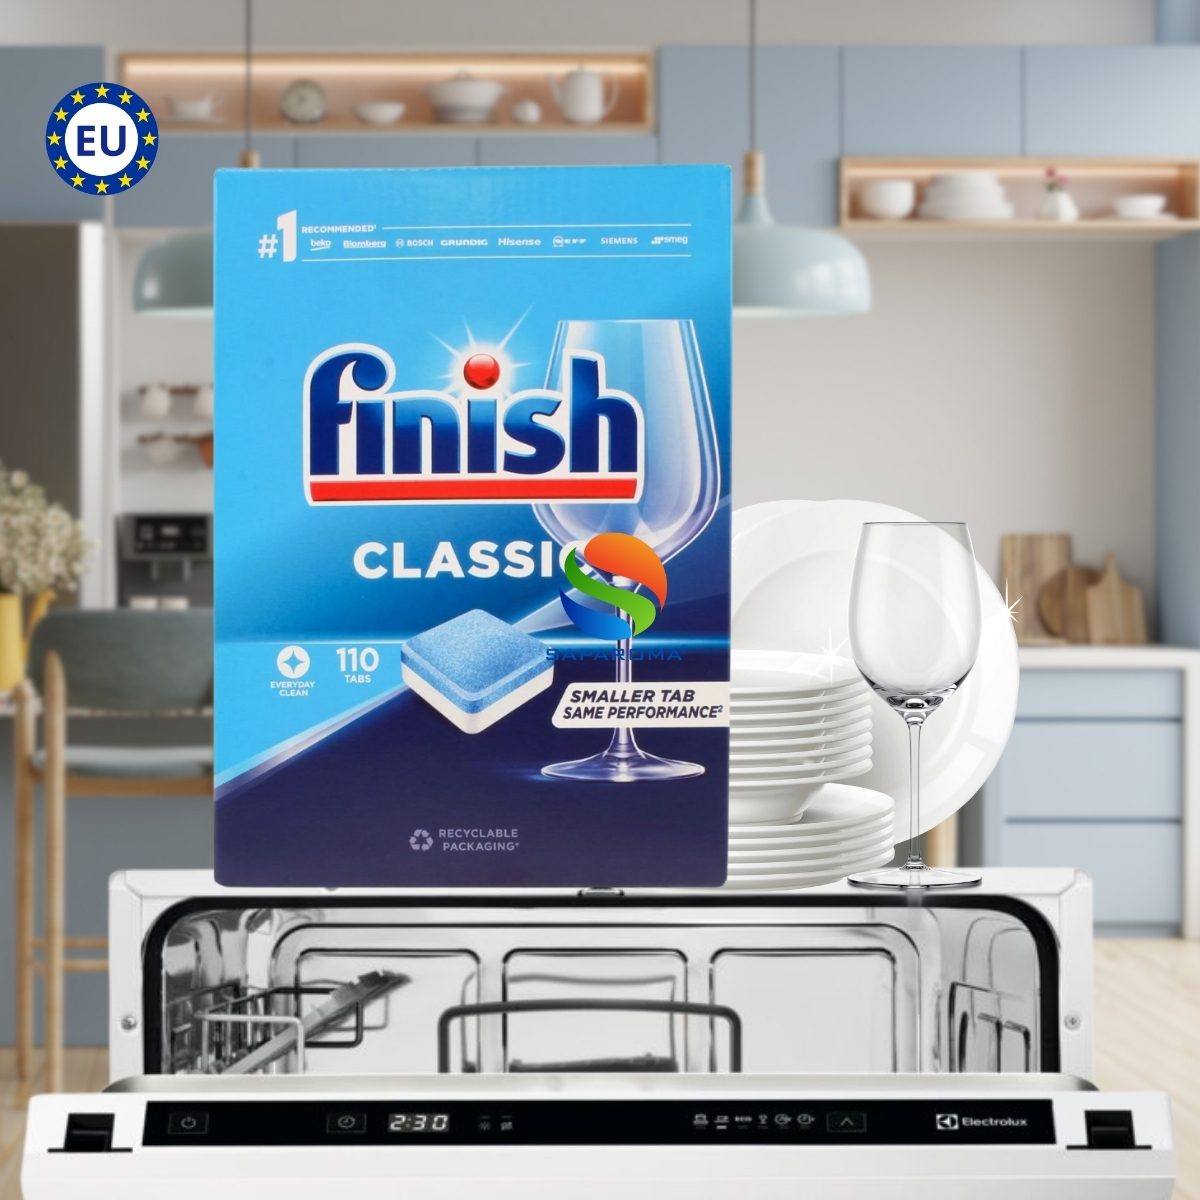 Hình ảnh Viên rửa bát Finish Classic 110 viên, viên rửa cao cấp chuyên dùng cho máy rửa bát, nhập khẩu chính hãng